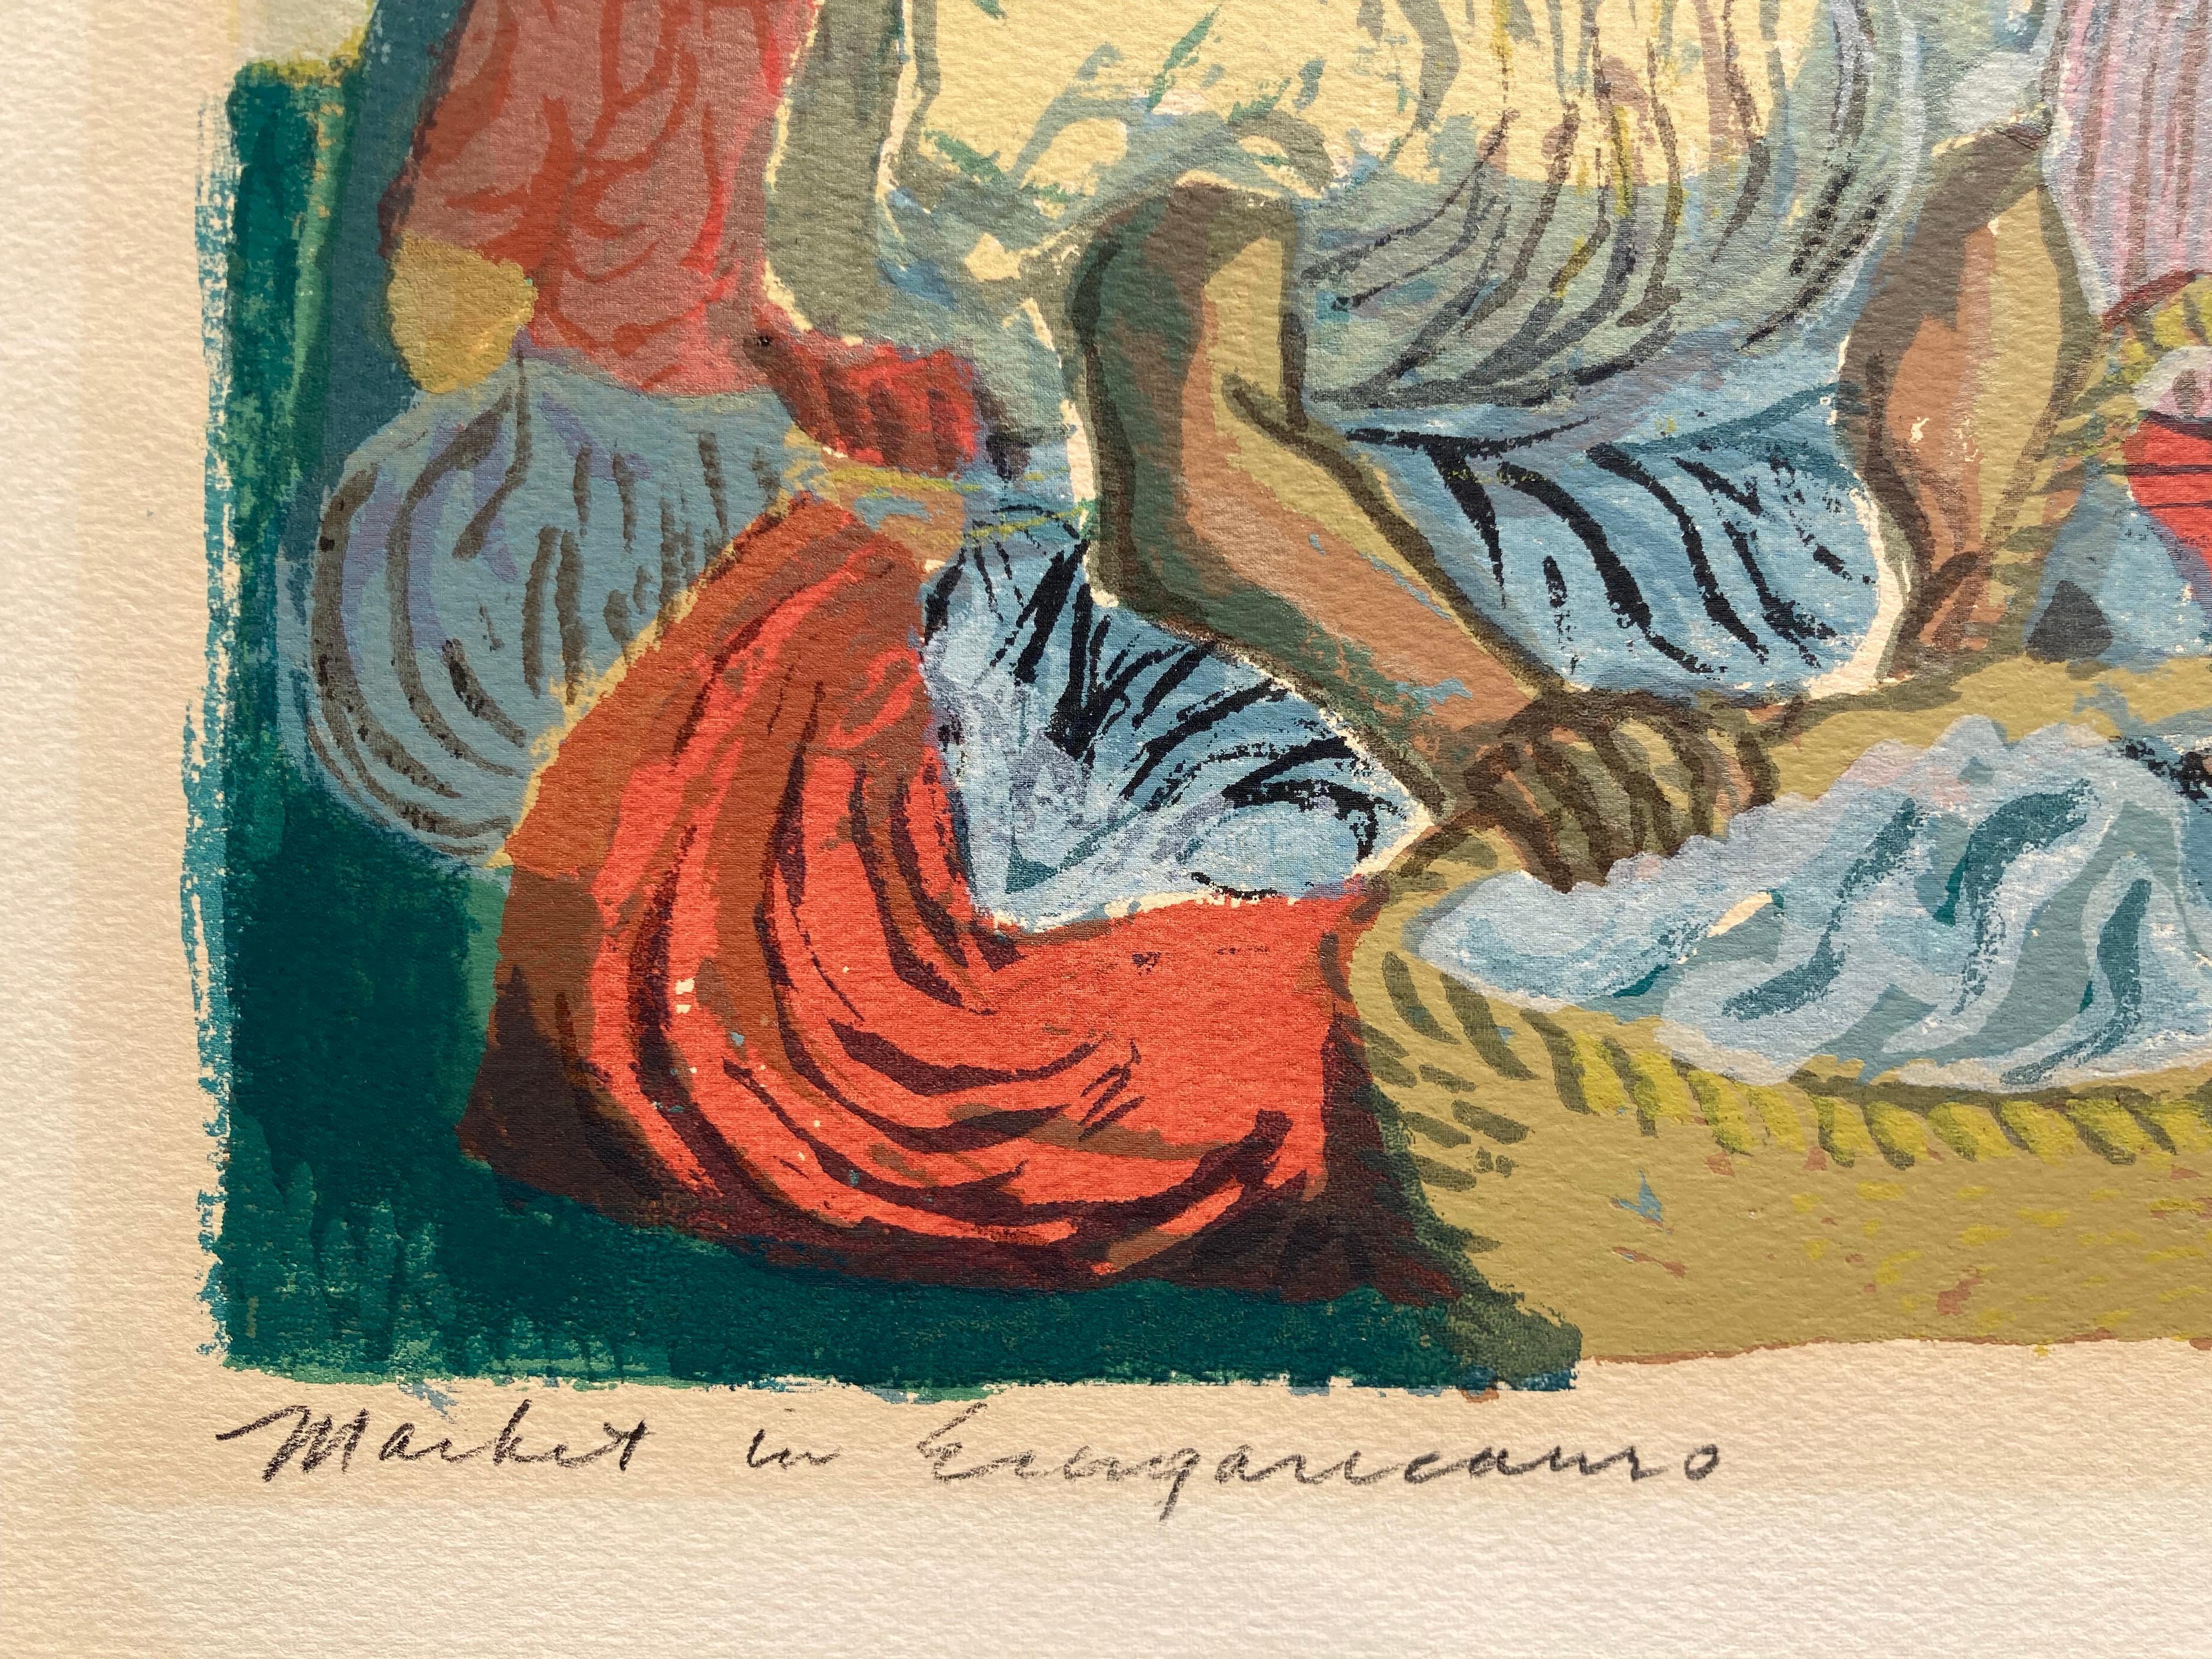 MARKET IN ERONGARICUARO  - Print by Morton Dimondstein